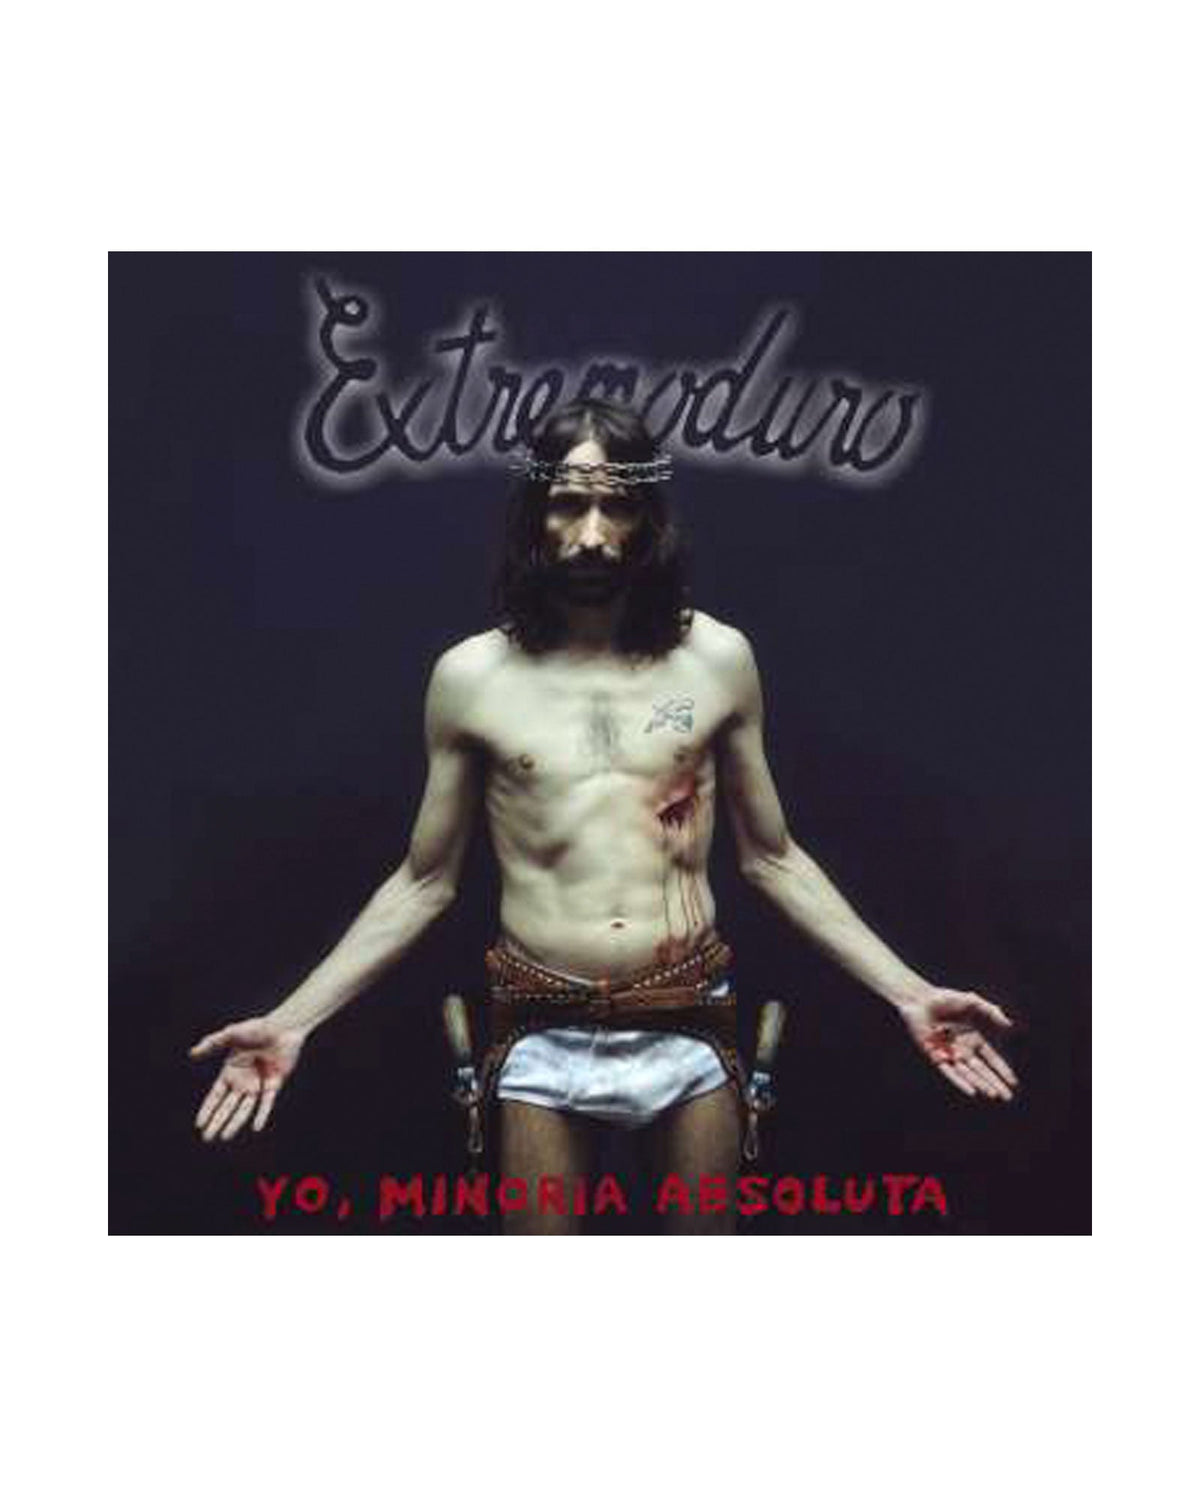 Extremoduro - LP Vinilo "Yo, minoría absoluta" - D2fy · Rocktud - Rocktud